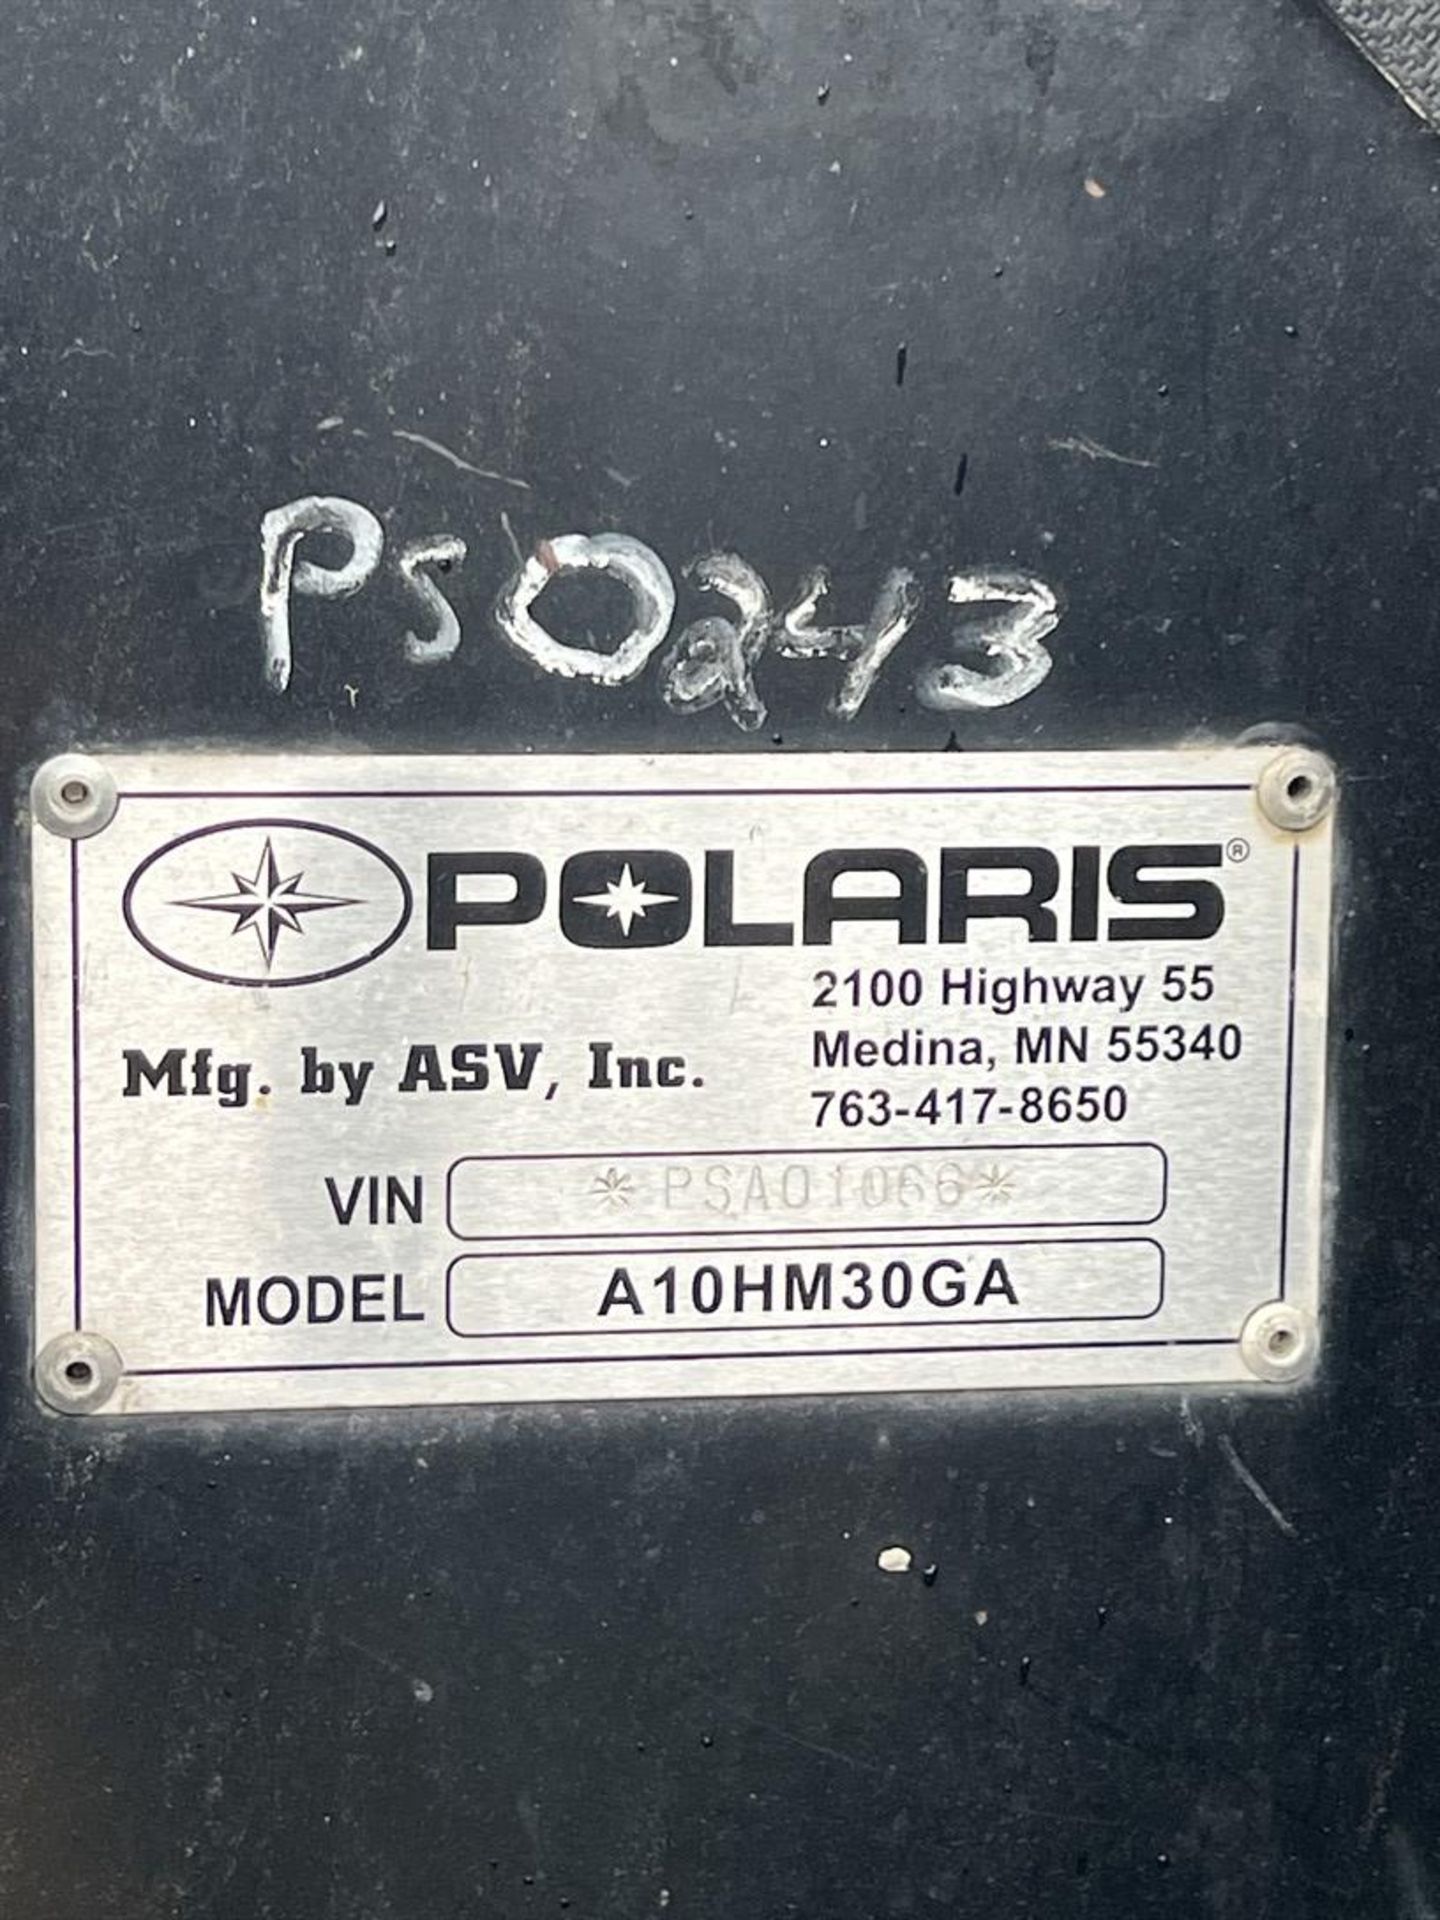 POLARIS ASV A10HM30GA Track Loader Skid Steer, VIN # PSA01066, w/ Front Bucket - Image 14 of 16